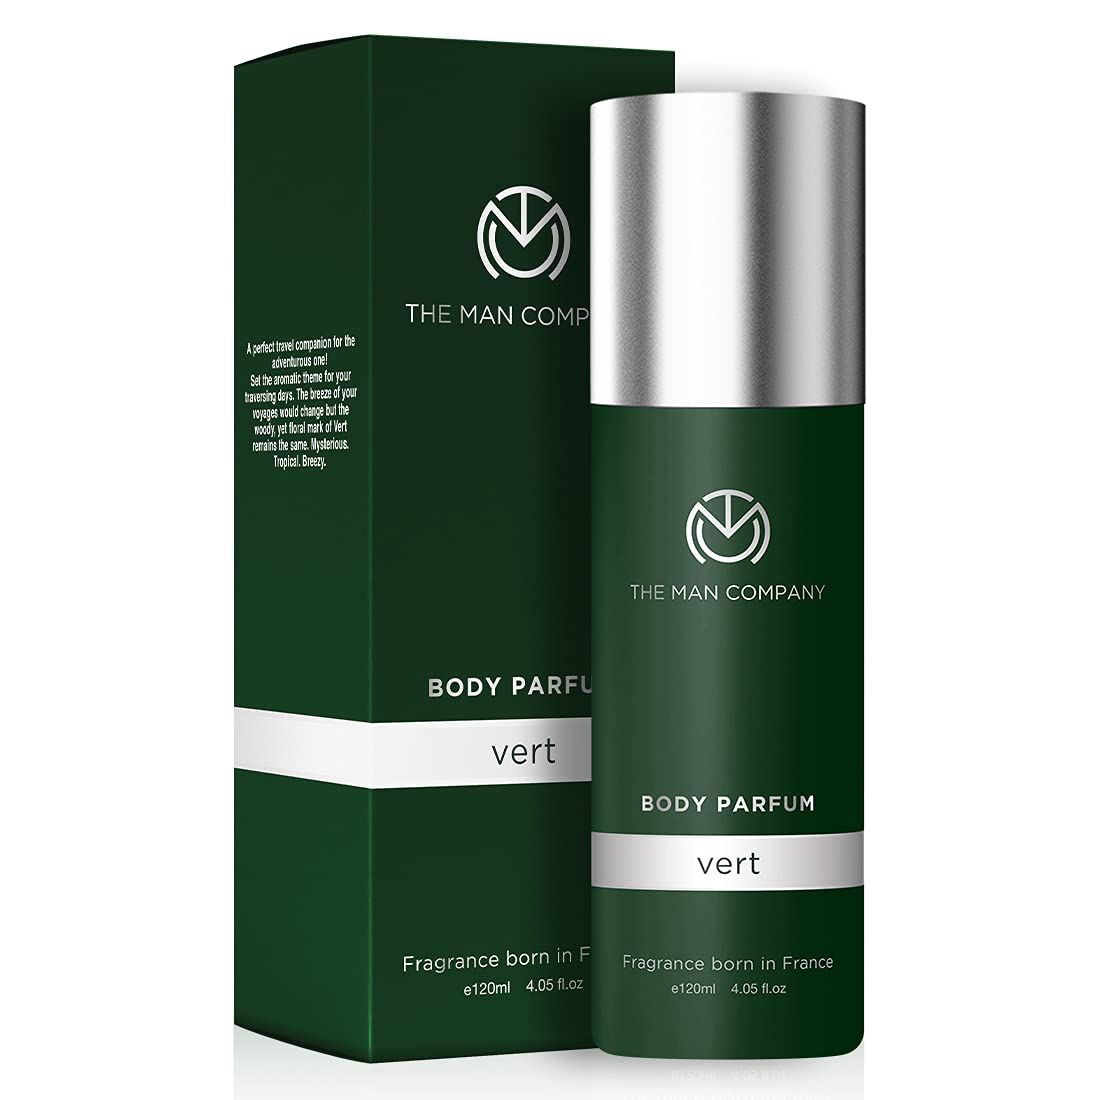 The Man Company Non-gas Body Perfume For Men - Vert